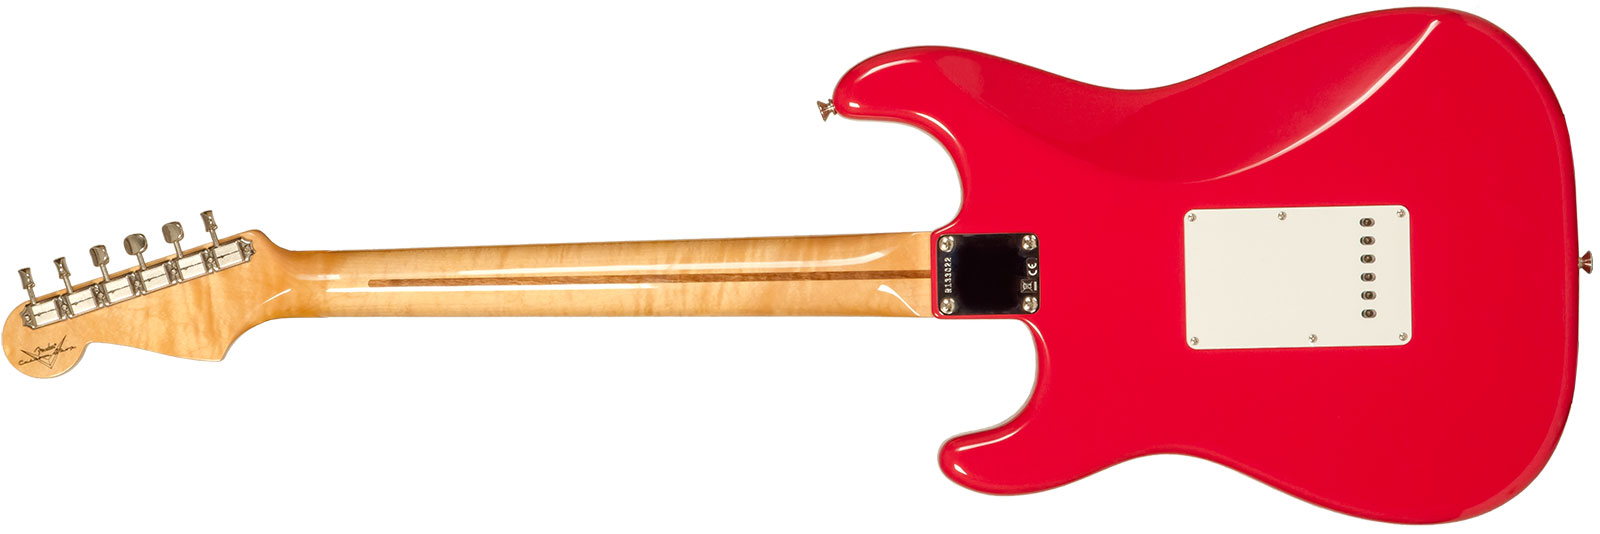 Fender Custom Shop Strat 1956 3s Trem Mn #r133022 - Nos Fiesta Red - Guitare Électrique Forme Str - Variation 1